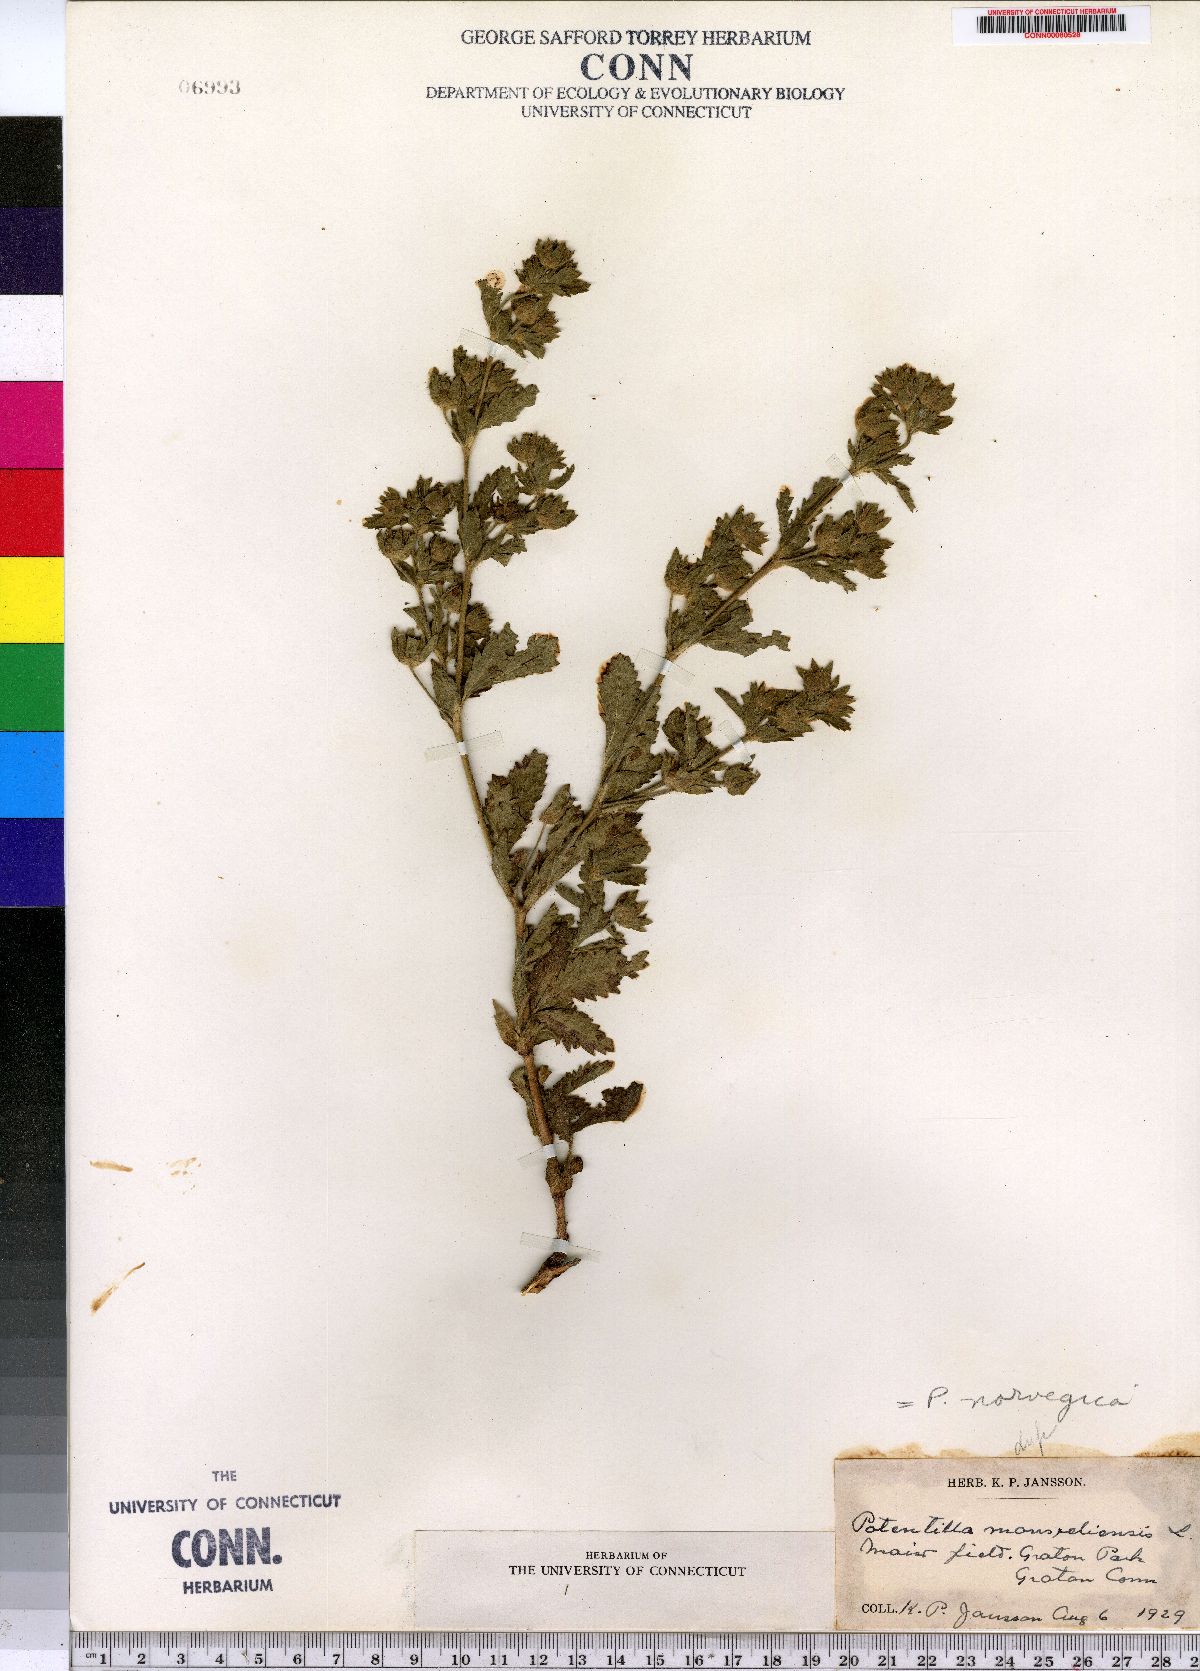 Potentilla norvegica ssp. monspeliensis image